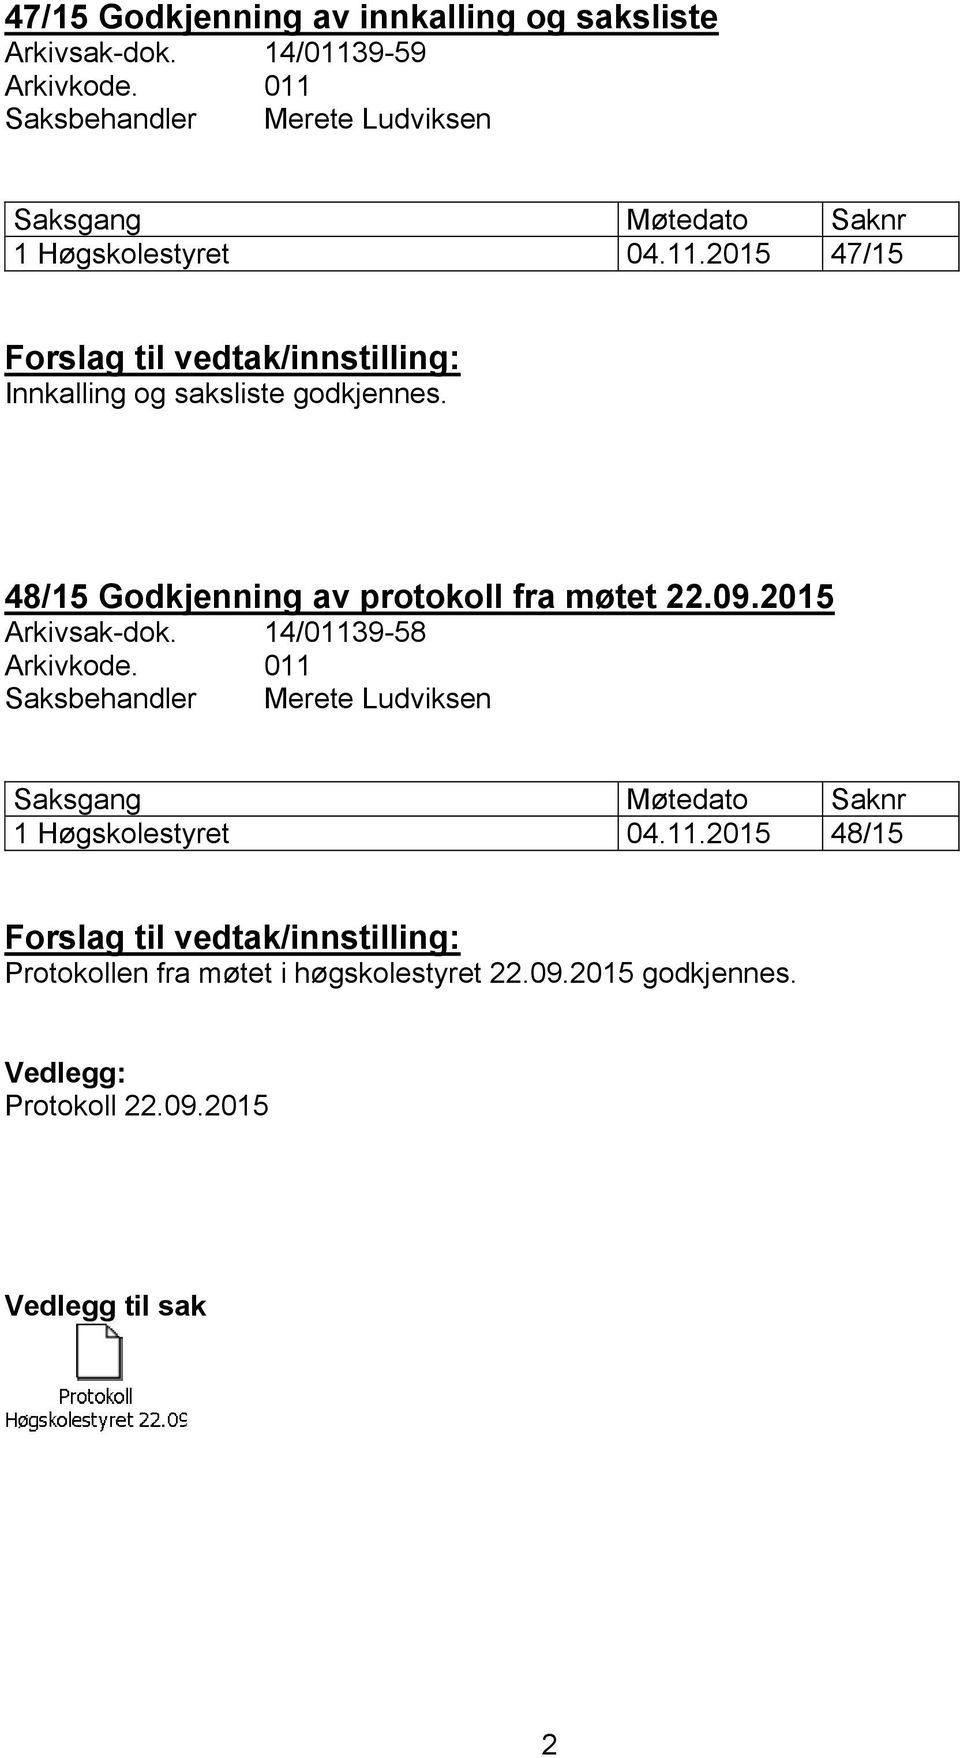 48/15 Godkjenning av protokoll fra møtet 22.09.2015 Arkivsak-dok. 14/01139-58 Arkivkode.